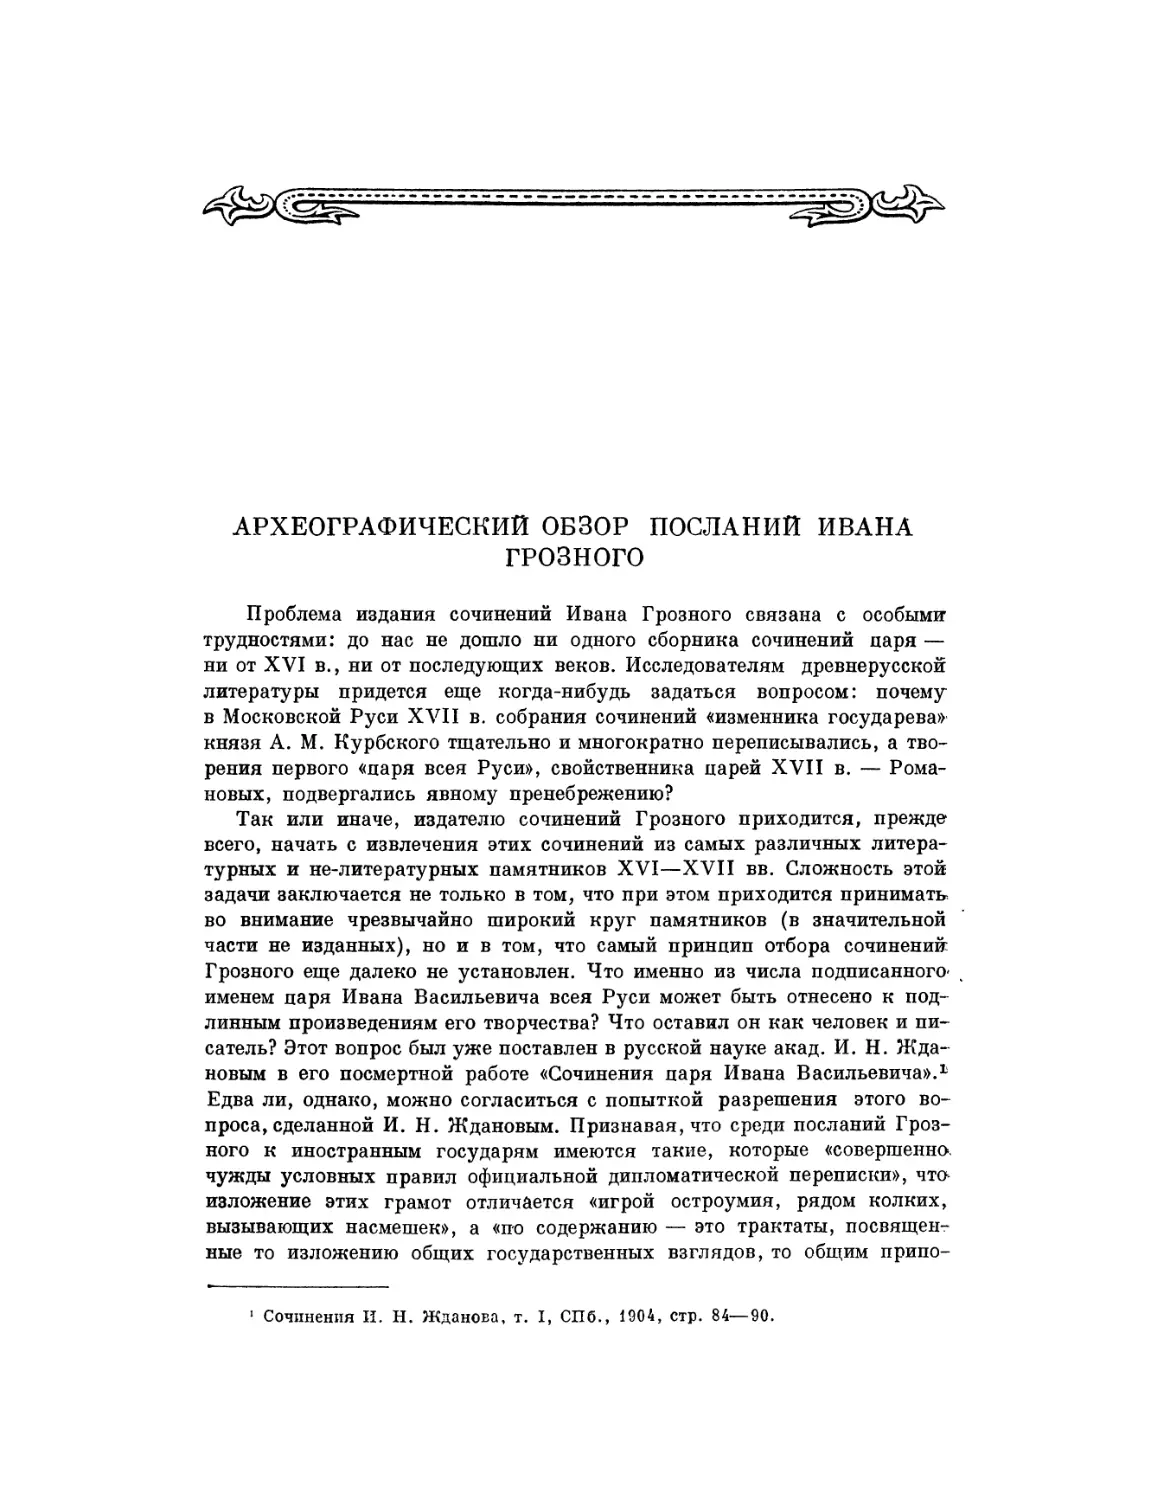 Археографический обзор посланий Ивана Грозного